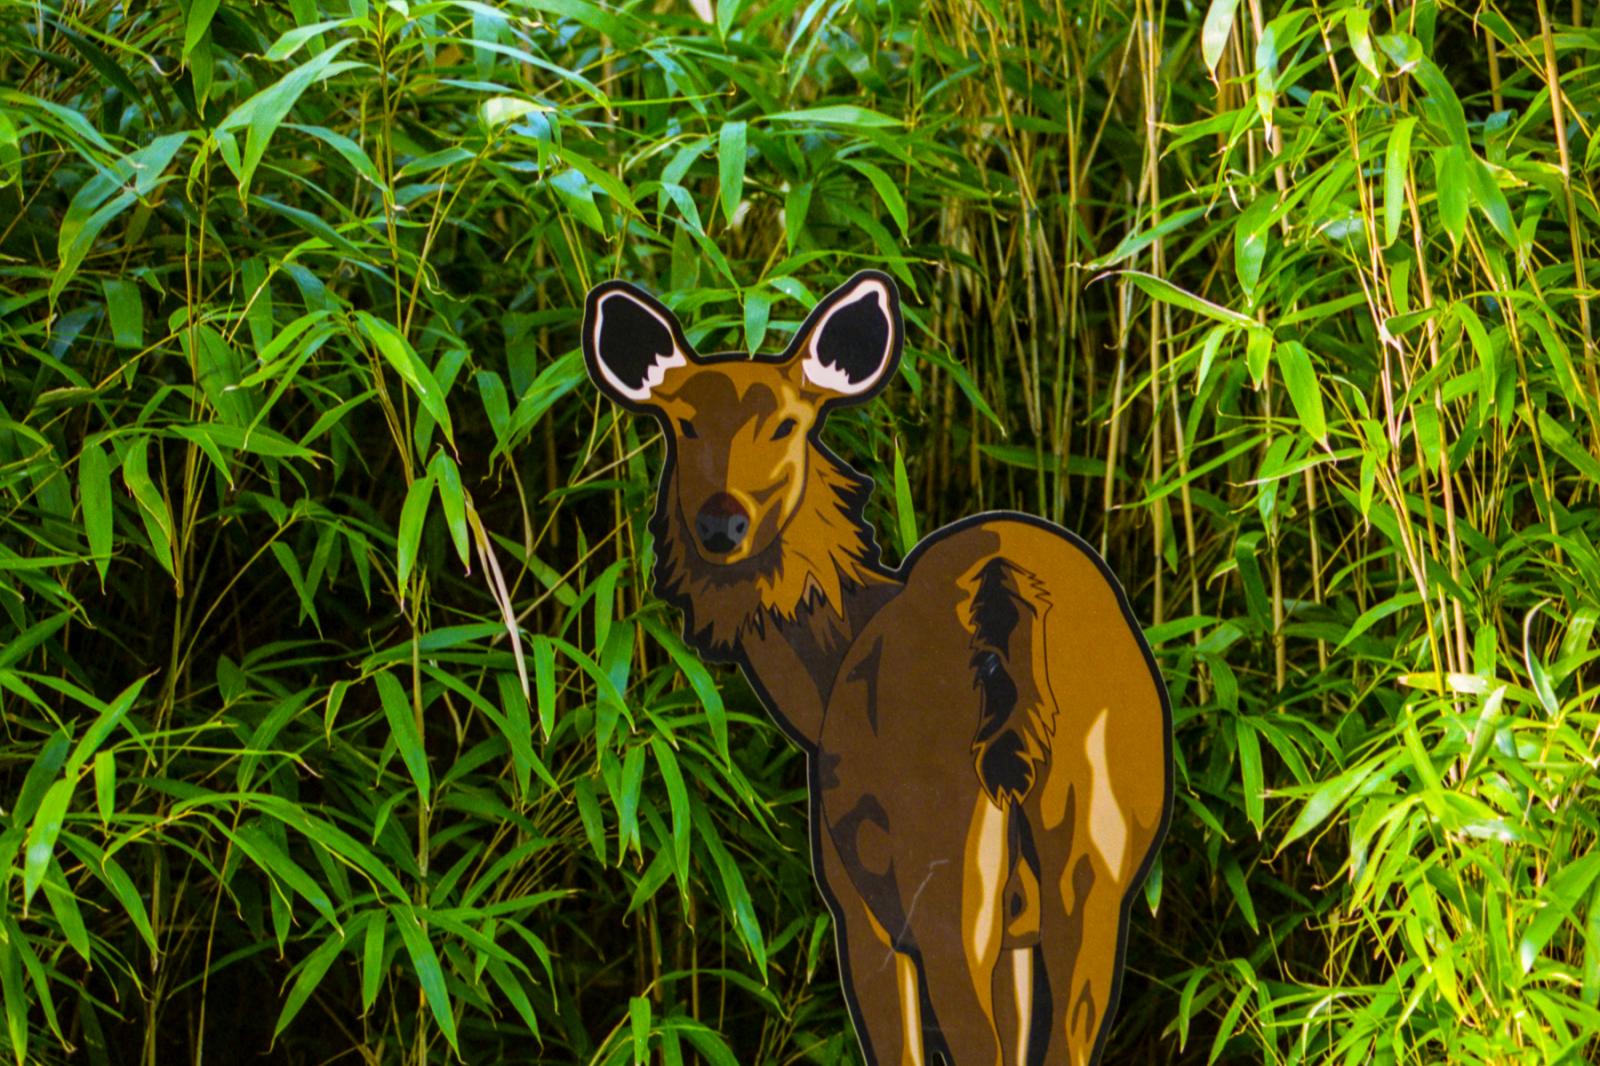 What I See - Deer exhibit, Smithsonian National Zoo. Washington, DC.